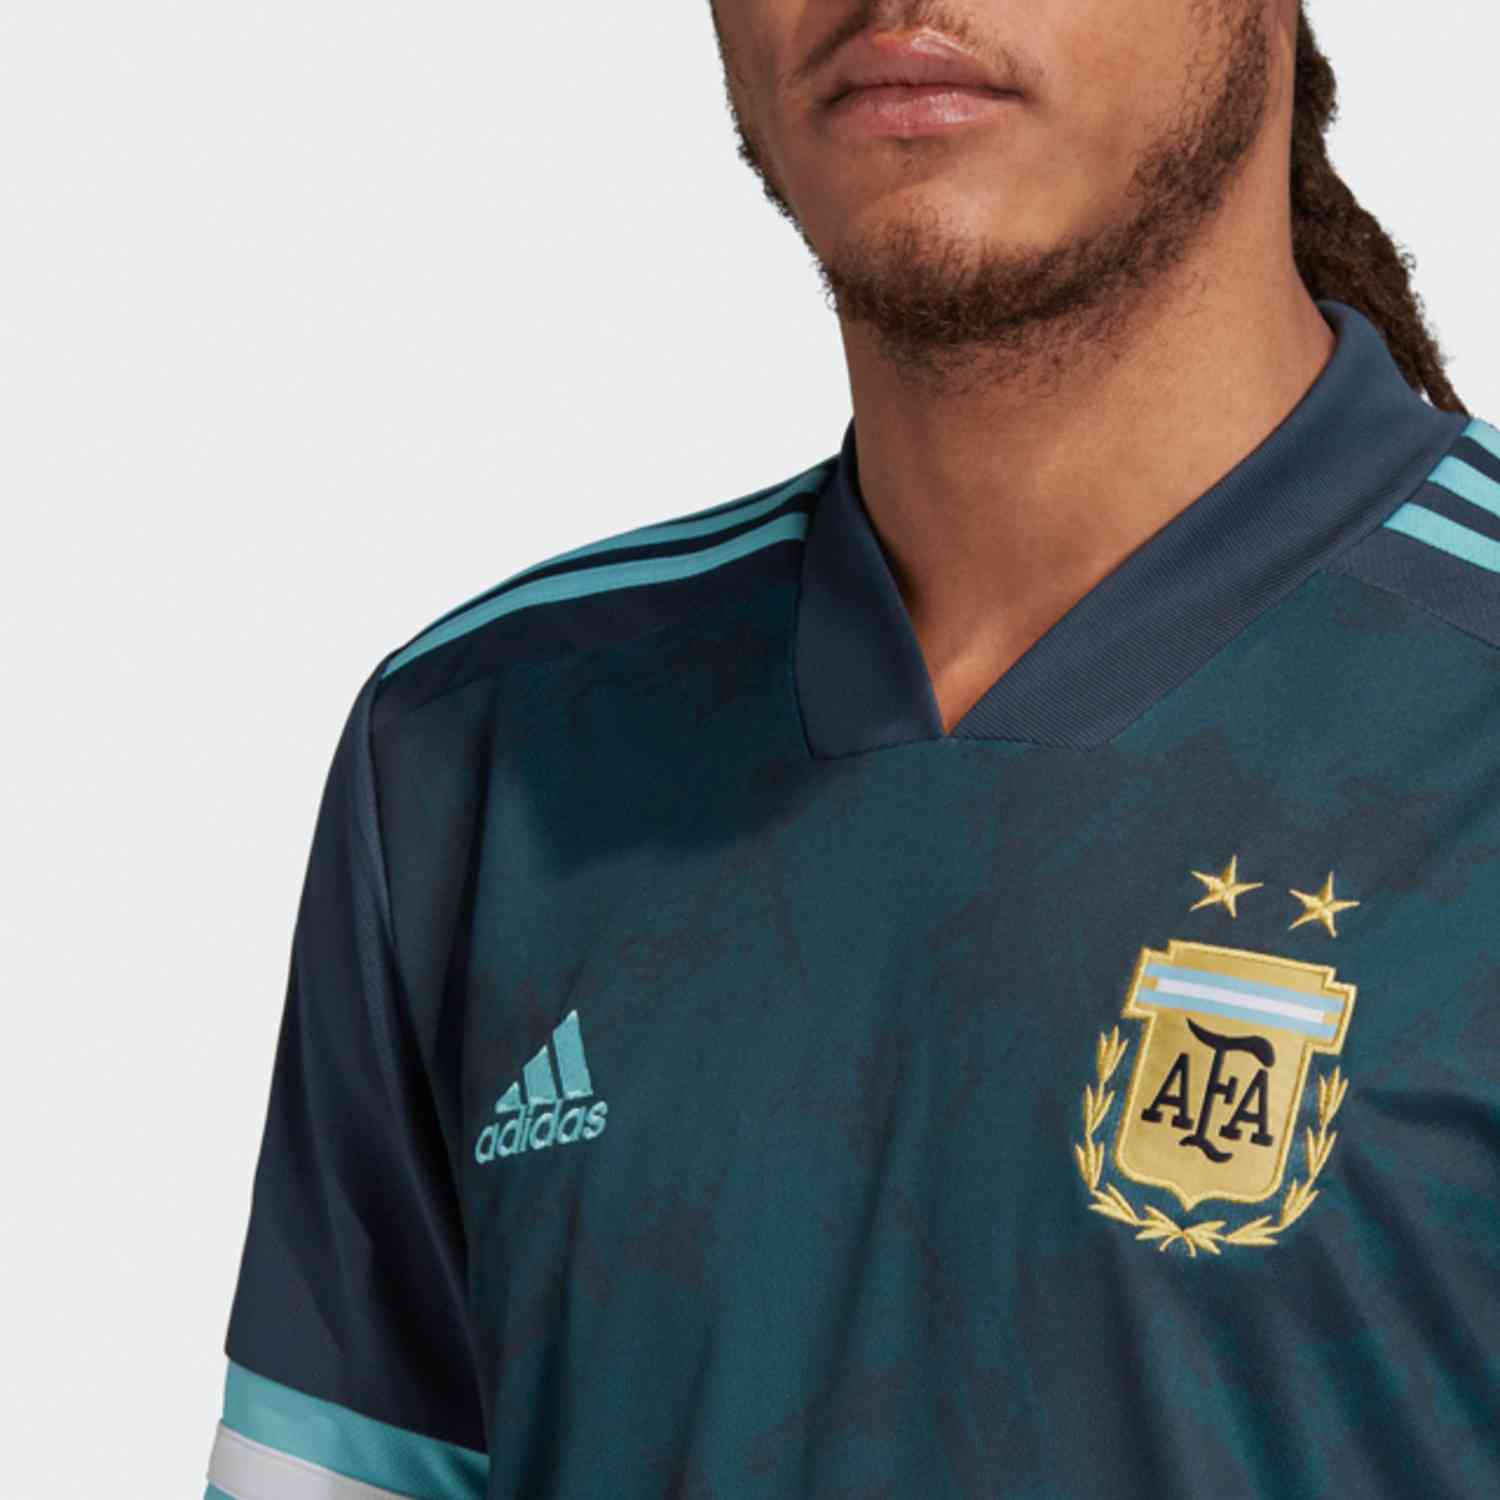 argentina away jersey 2020